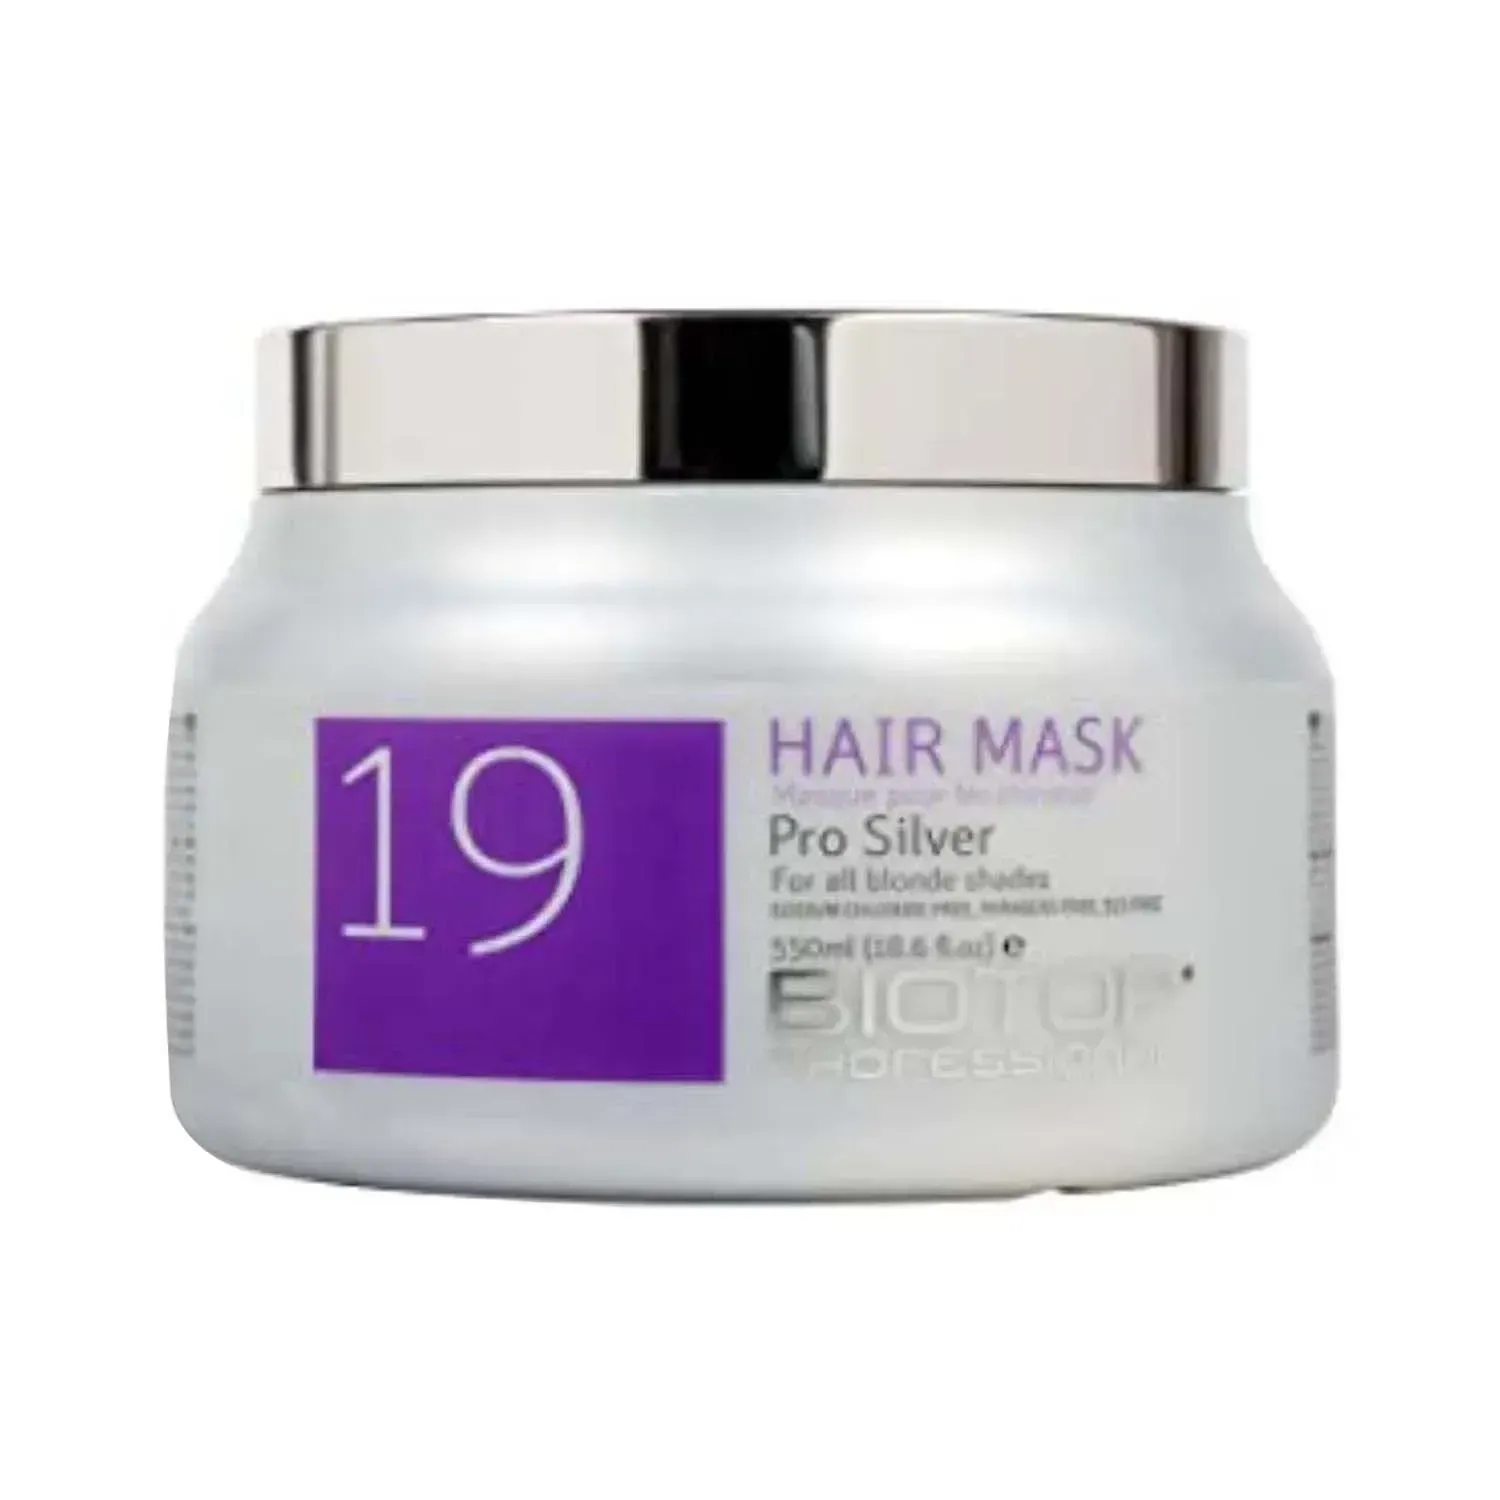 Biotop Professional | Biotop Professional 19 Pro Silver Hair Mask - (550ml)